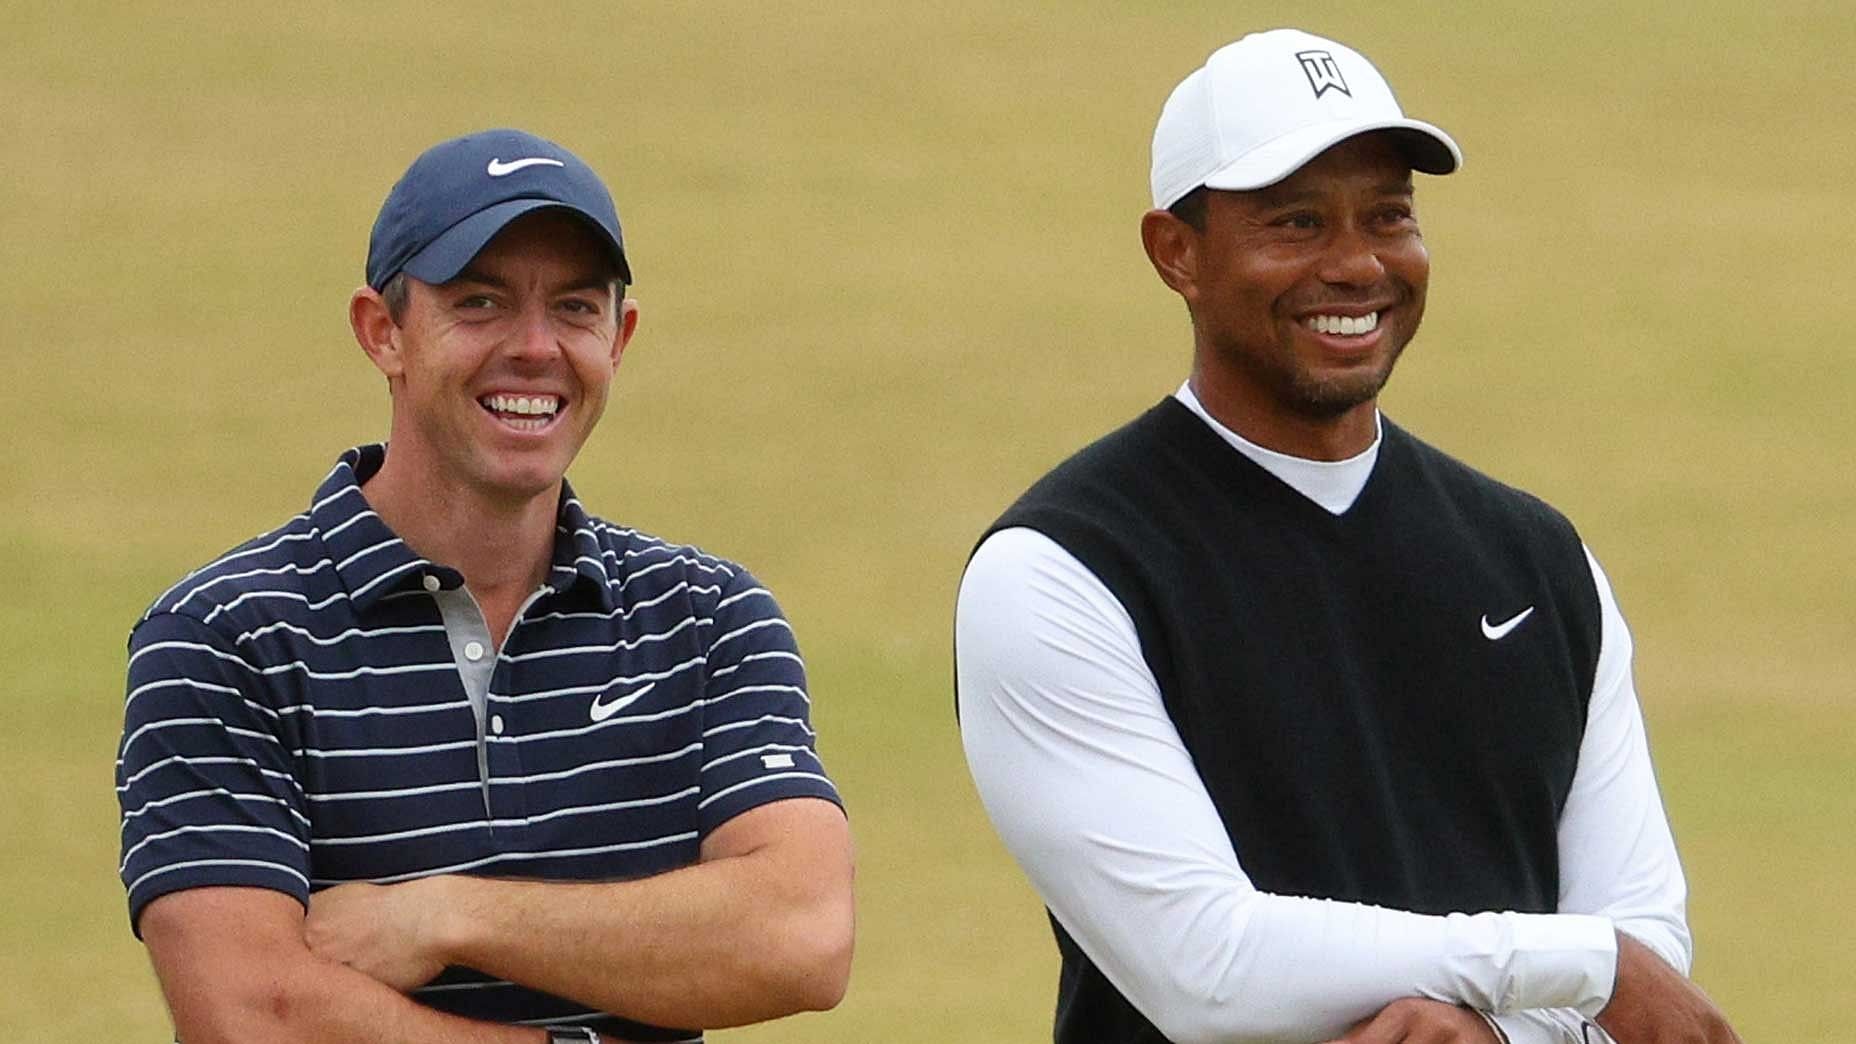 Tiger Woods and Rory McIlroy (image via golf.com)